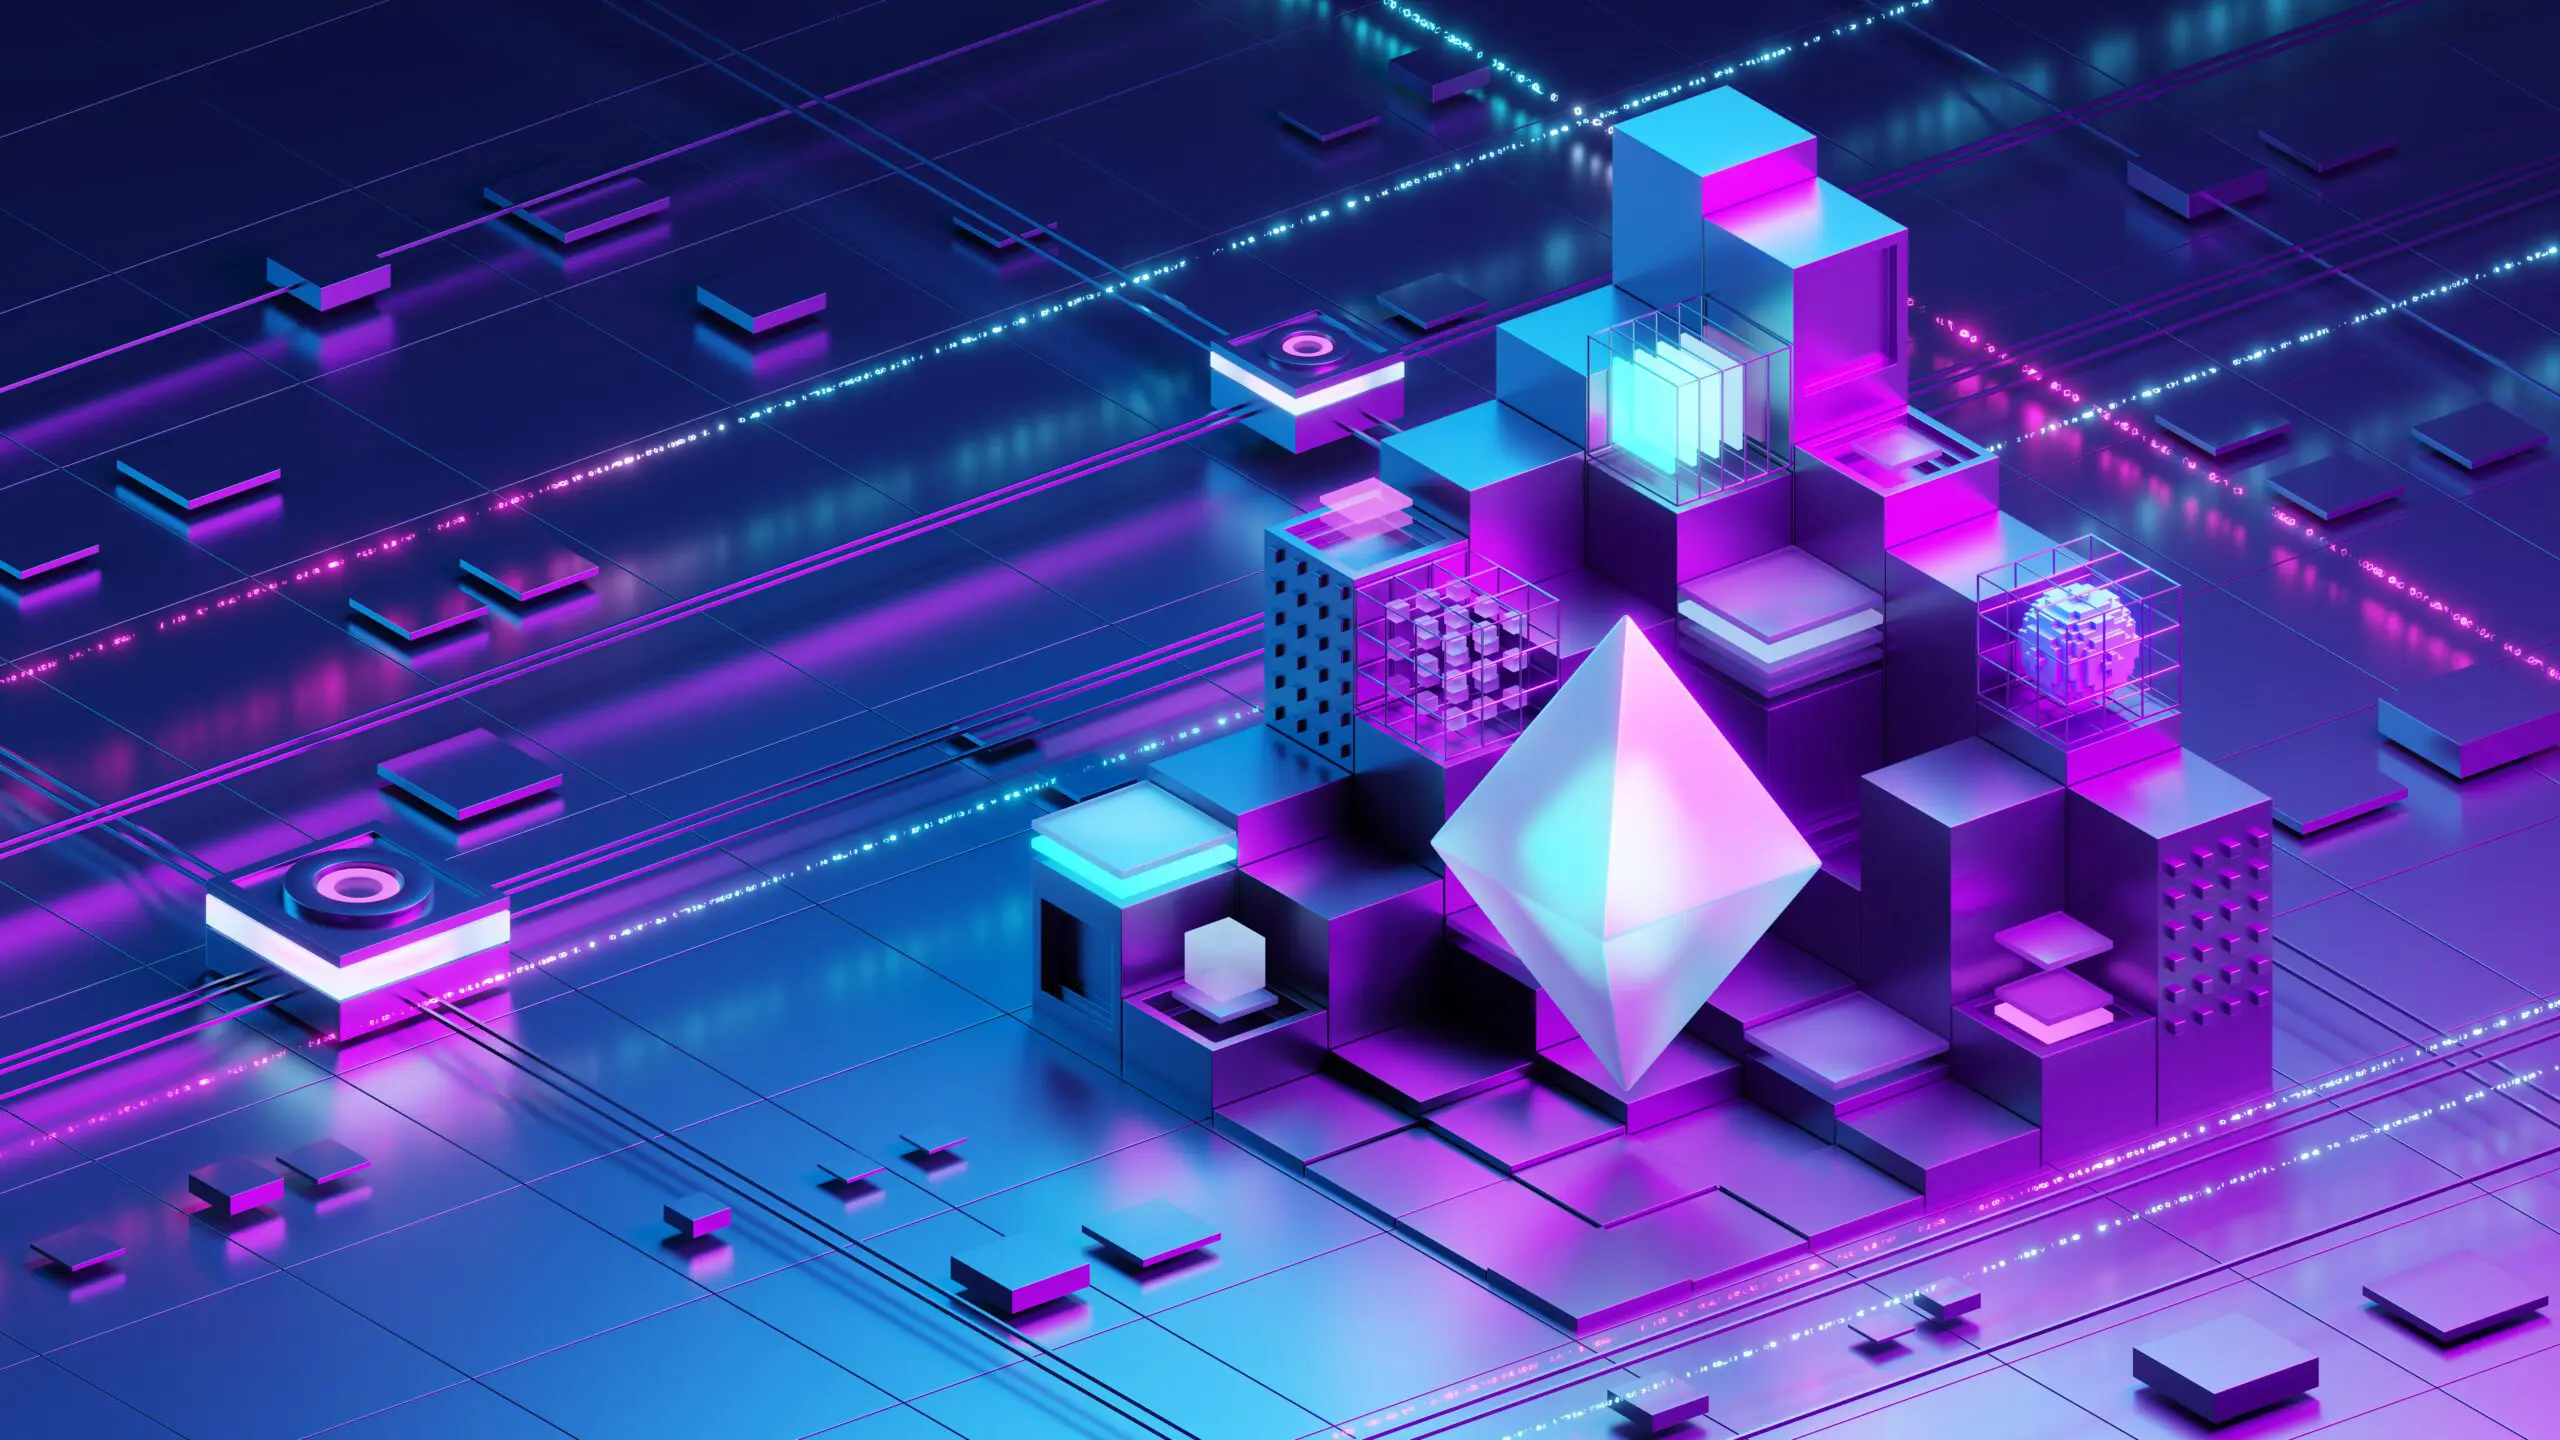 Eine stilisierte Darstellung einer Blockchain-Struktur mit neonfarbenen, kubischen Elementen und einem großen, leuchtenden Polygon im Zentrum.